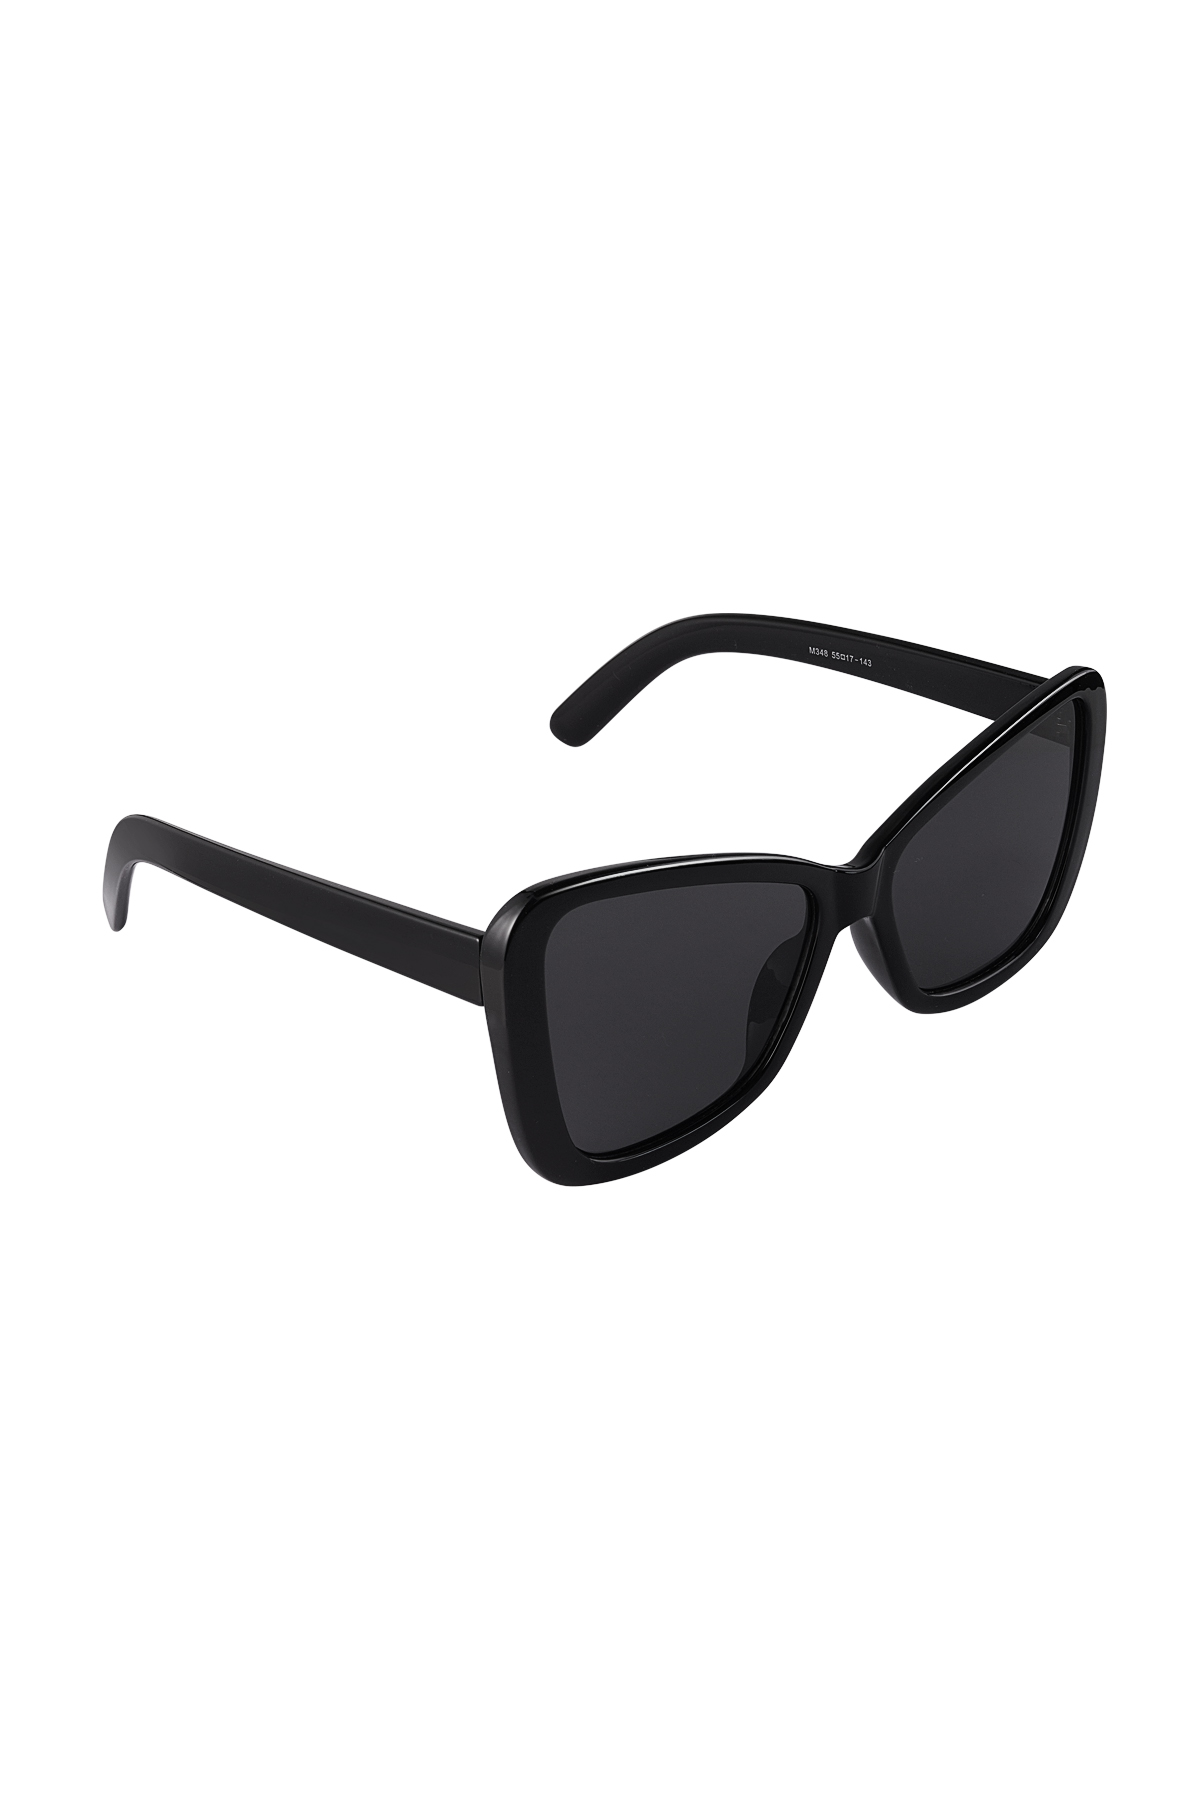 Gafas de sol ojo de gato simple - negro